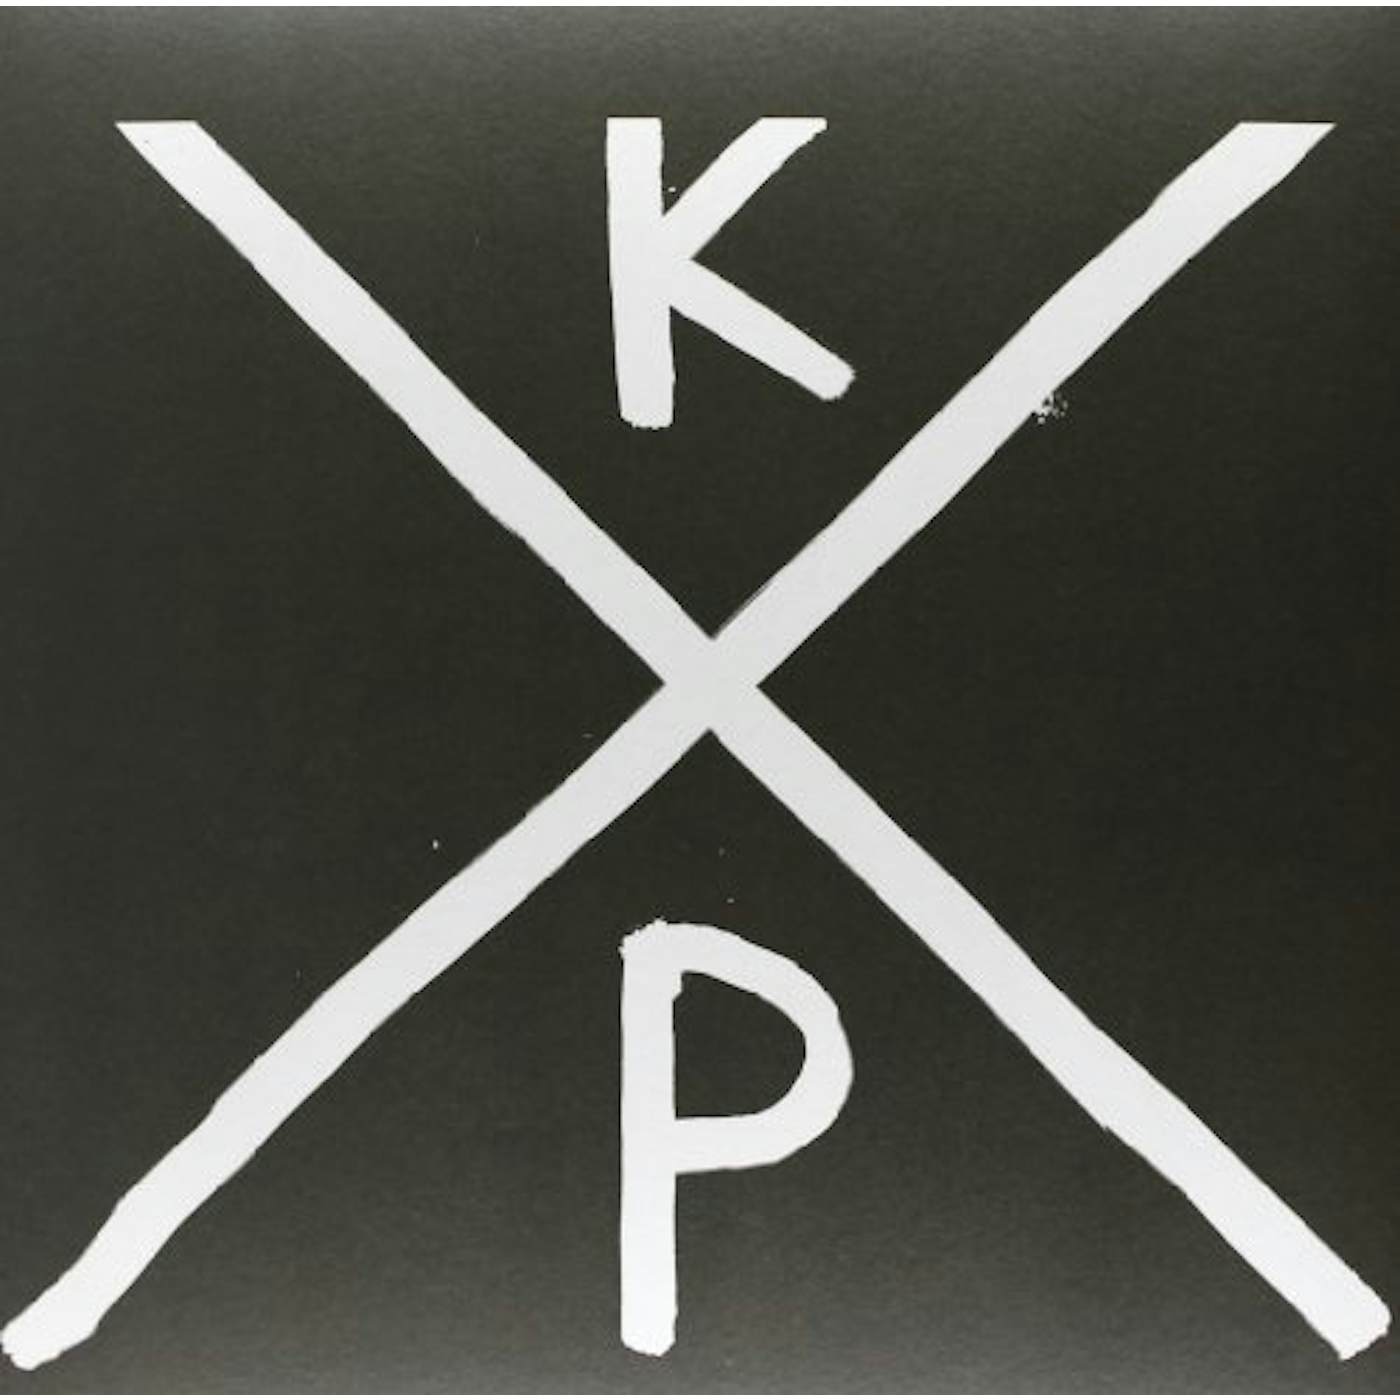 K-X-P Vinyl Record